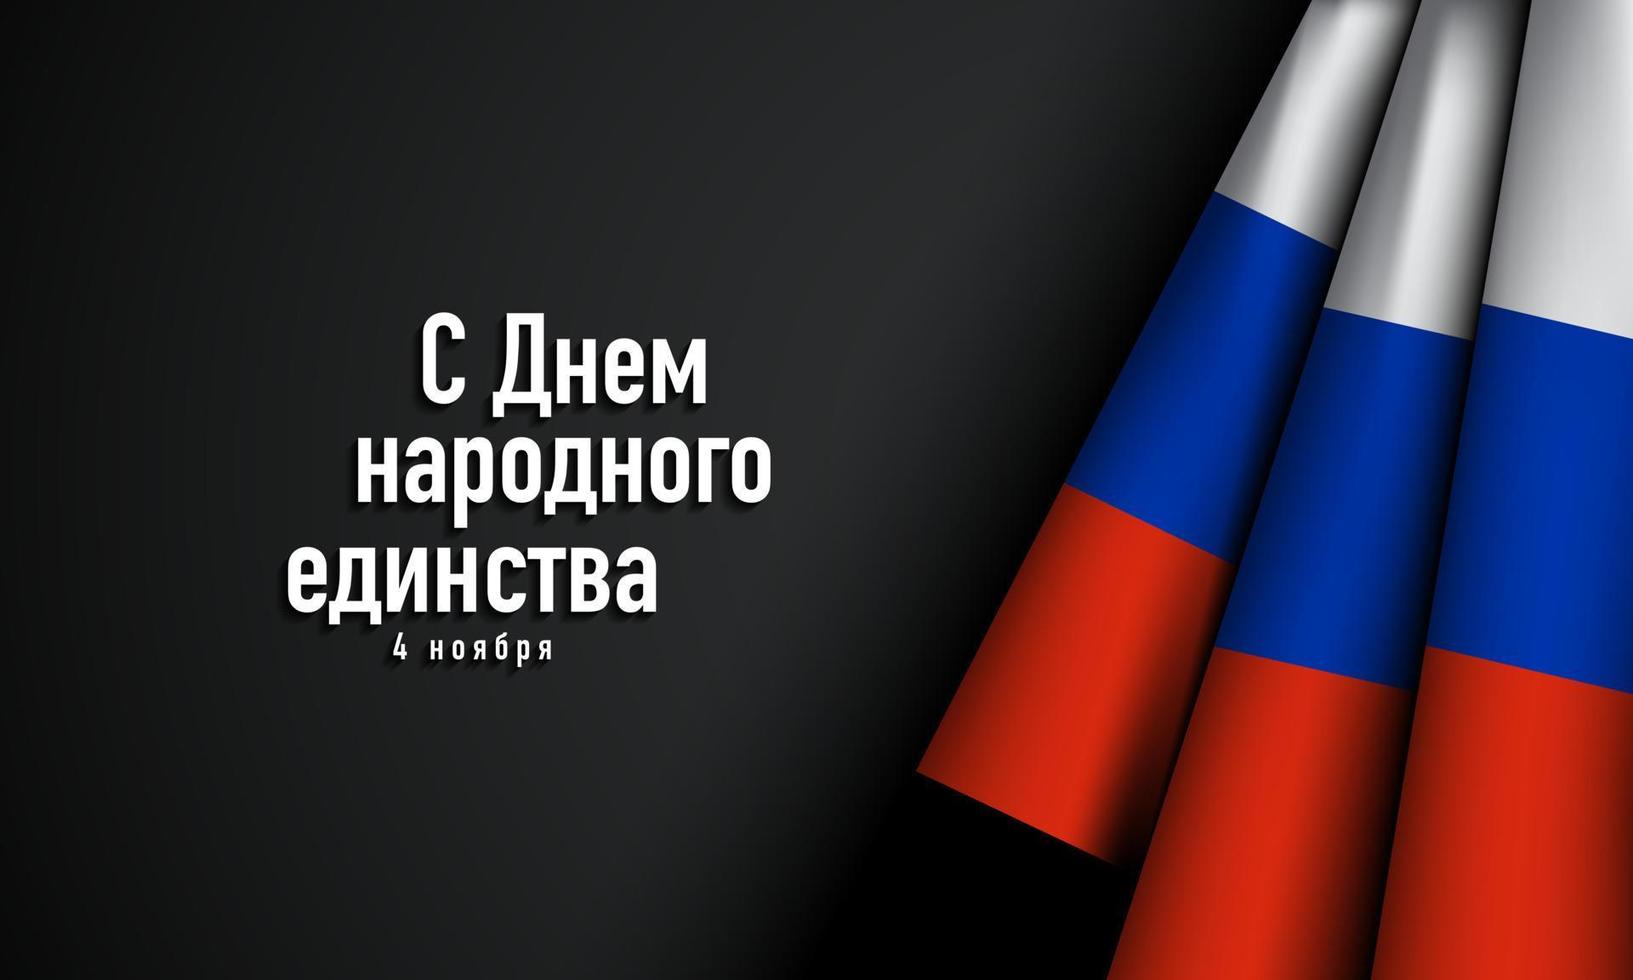 Rusland nationale eenheidsdag achtergrondontwerp. vector